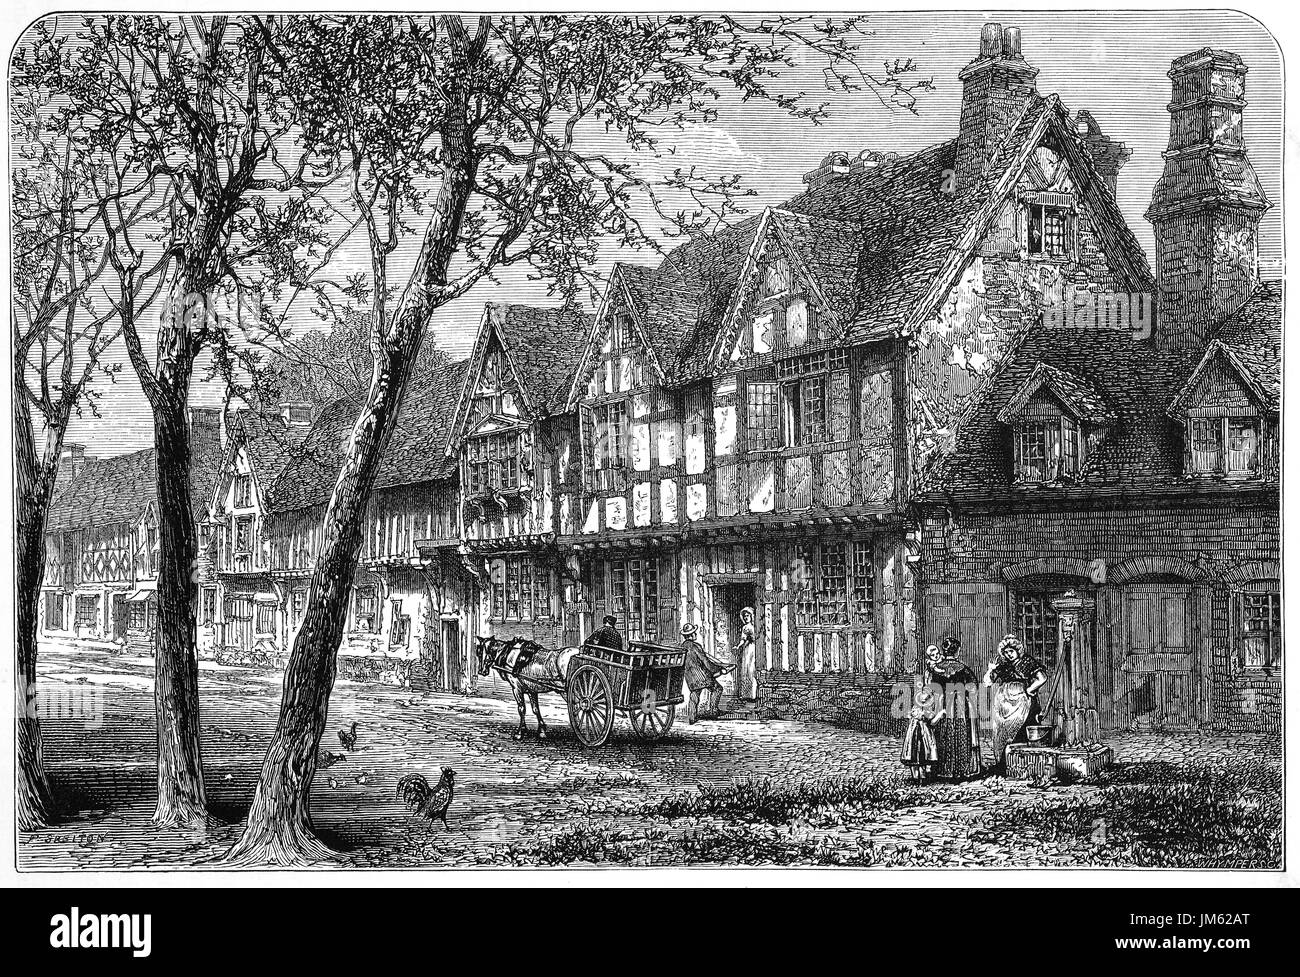 1870 : maisons à colombages médiévales ci-dessous le château de Warwick, Warwickshire, en Angleterre. Banque D'Images